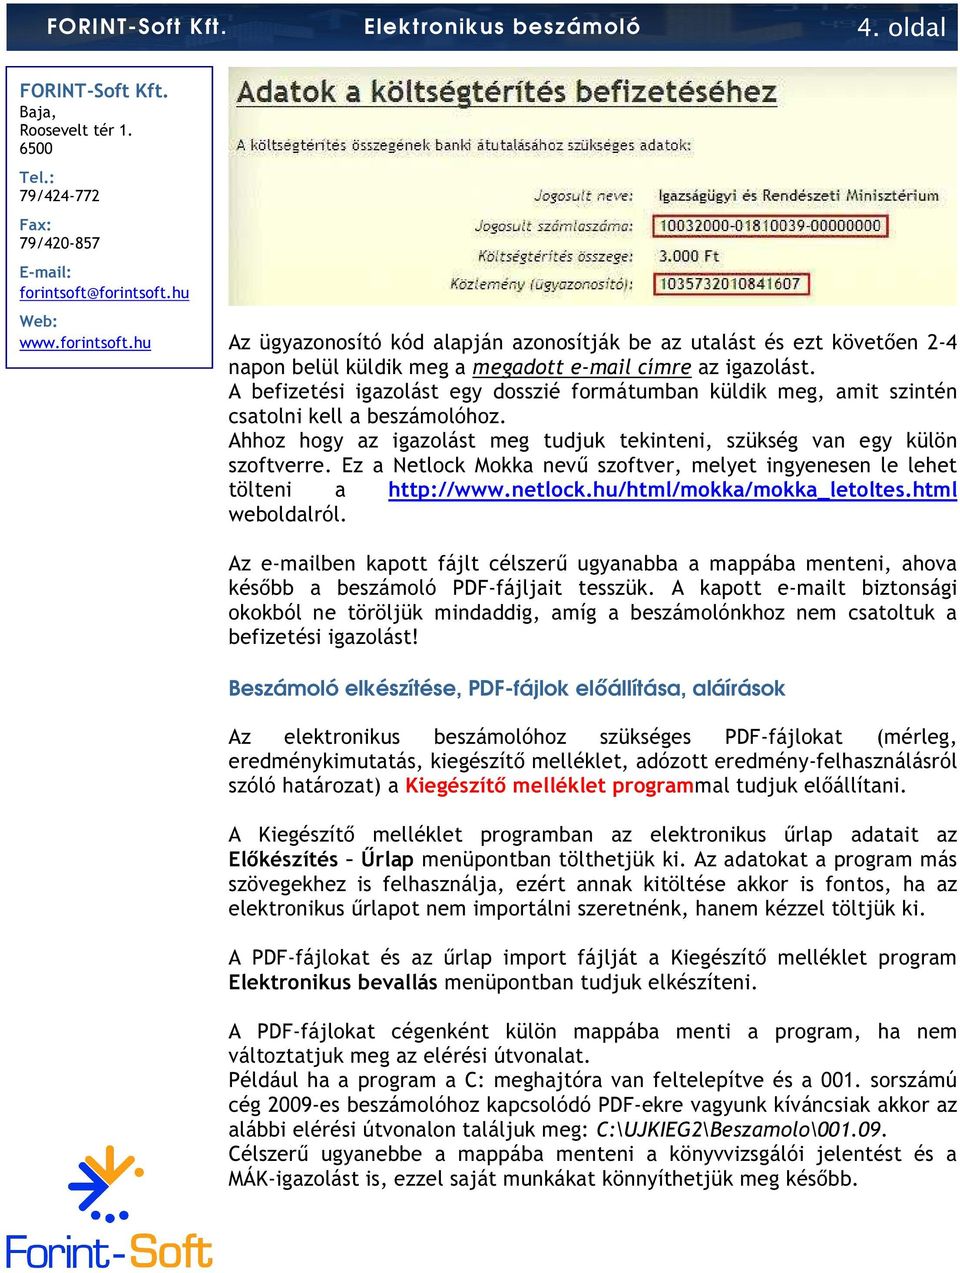 Ez a Netlock Mokka nevő szoftver, melyet ingyenesen le lehet tölteni a http://www.netlock.hu/html/mokka/mokka_letoltes.html weboldalról.